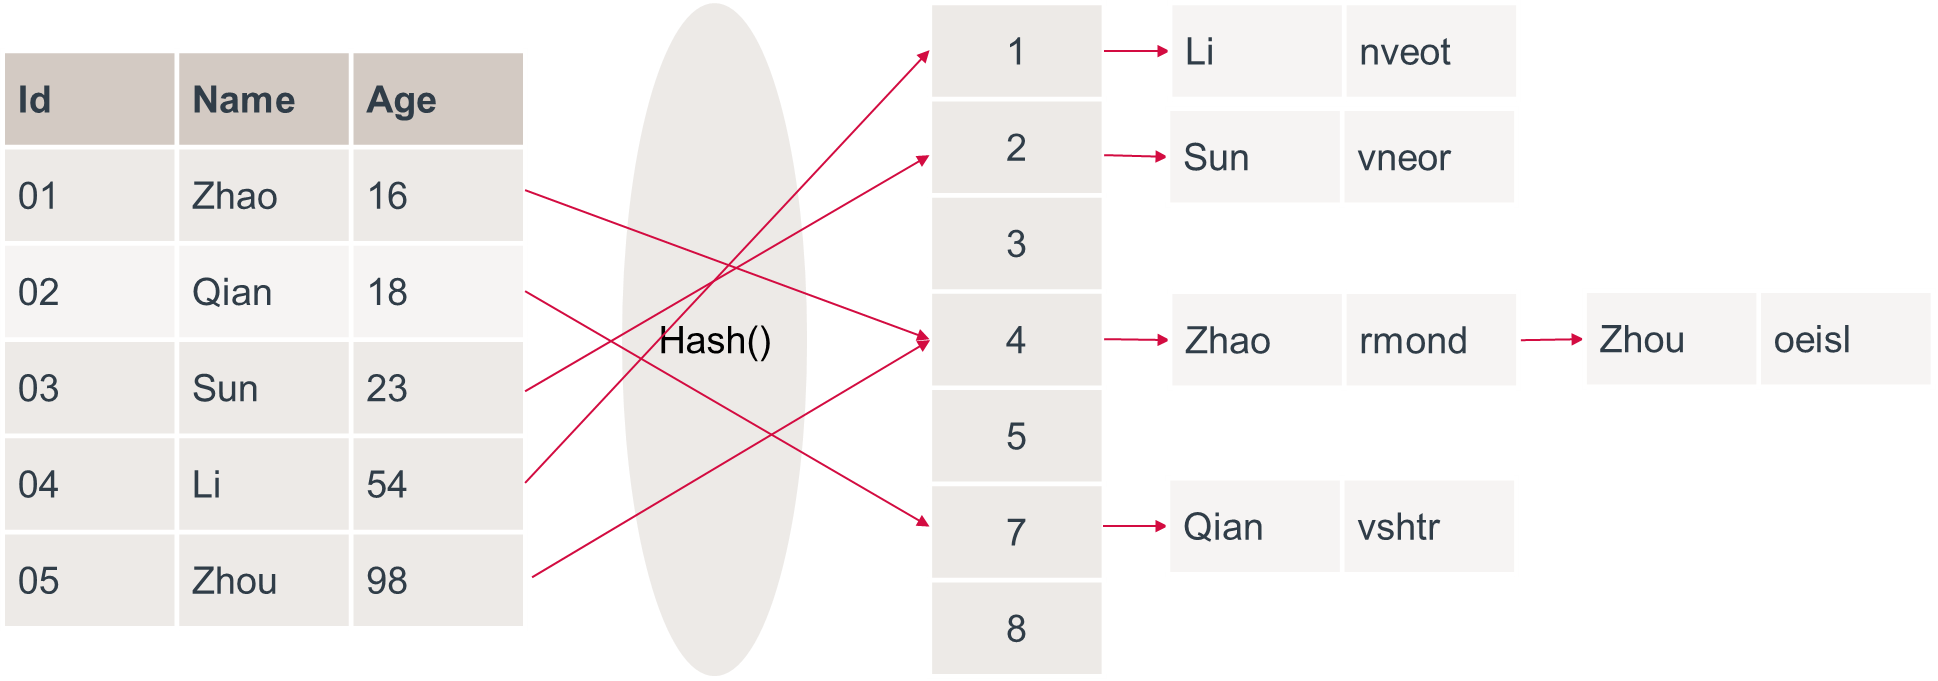 哈希索引的数据结构